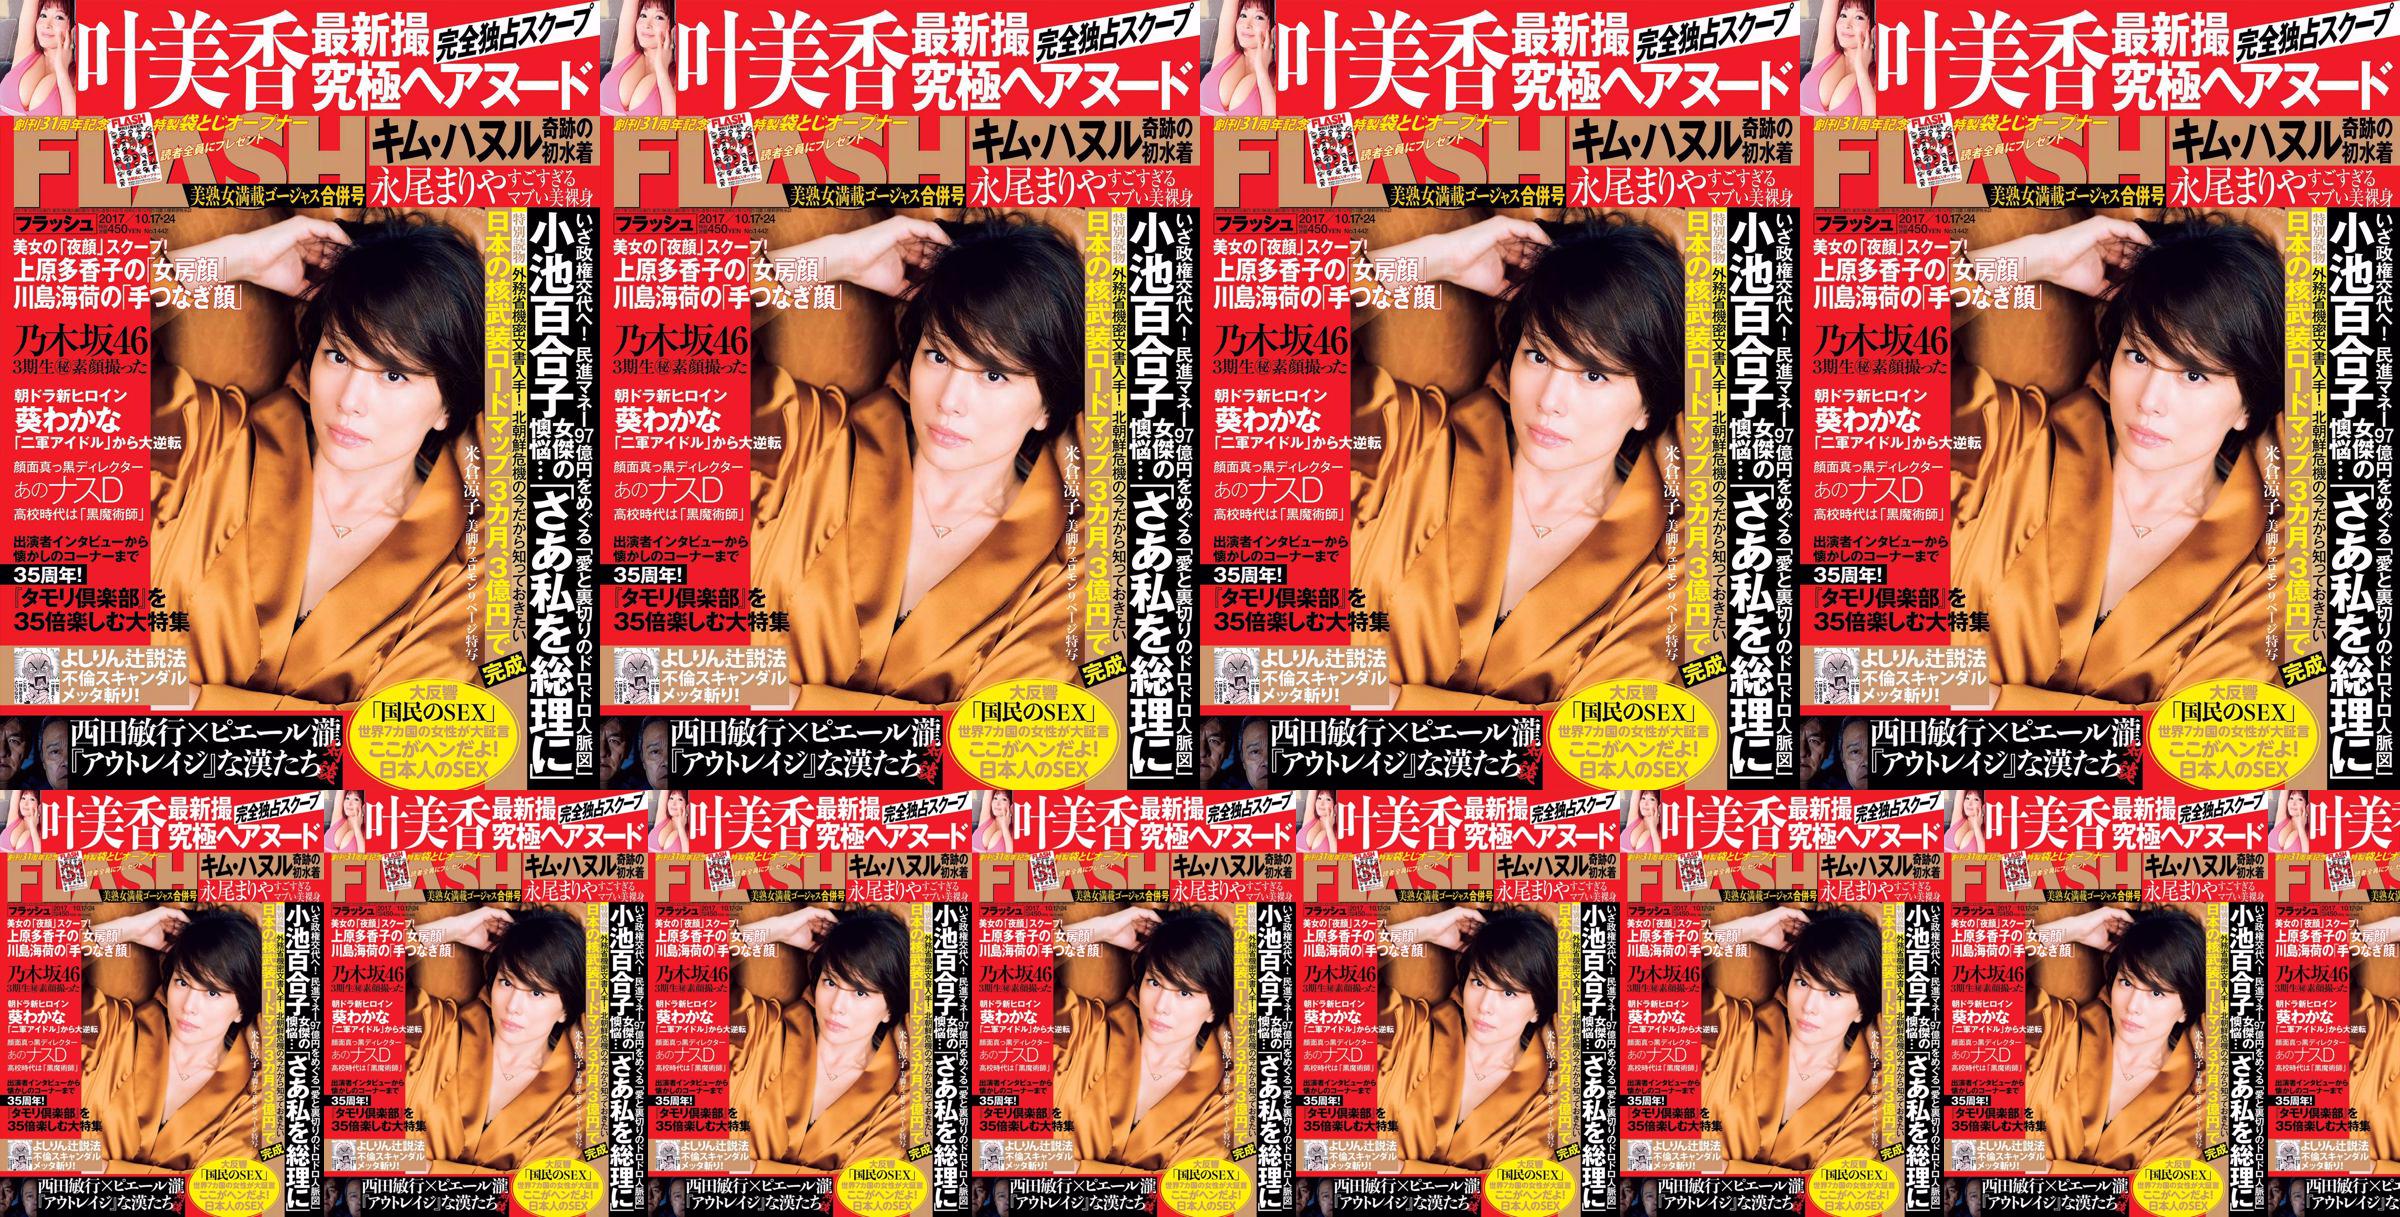 [FLASH] Yonekura Ryoko Ye Meixiang Tachibana Hoa Rin Nagao Rika 2017. 10.17-24 Tạp chí ảnh No.cd15d4 Trang 1